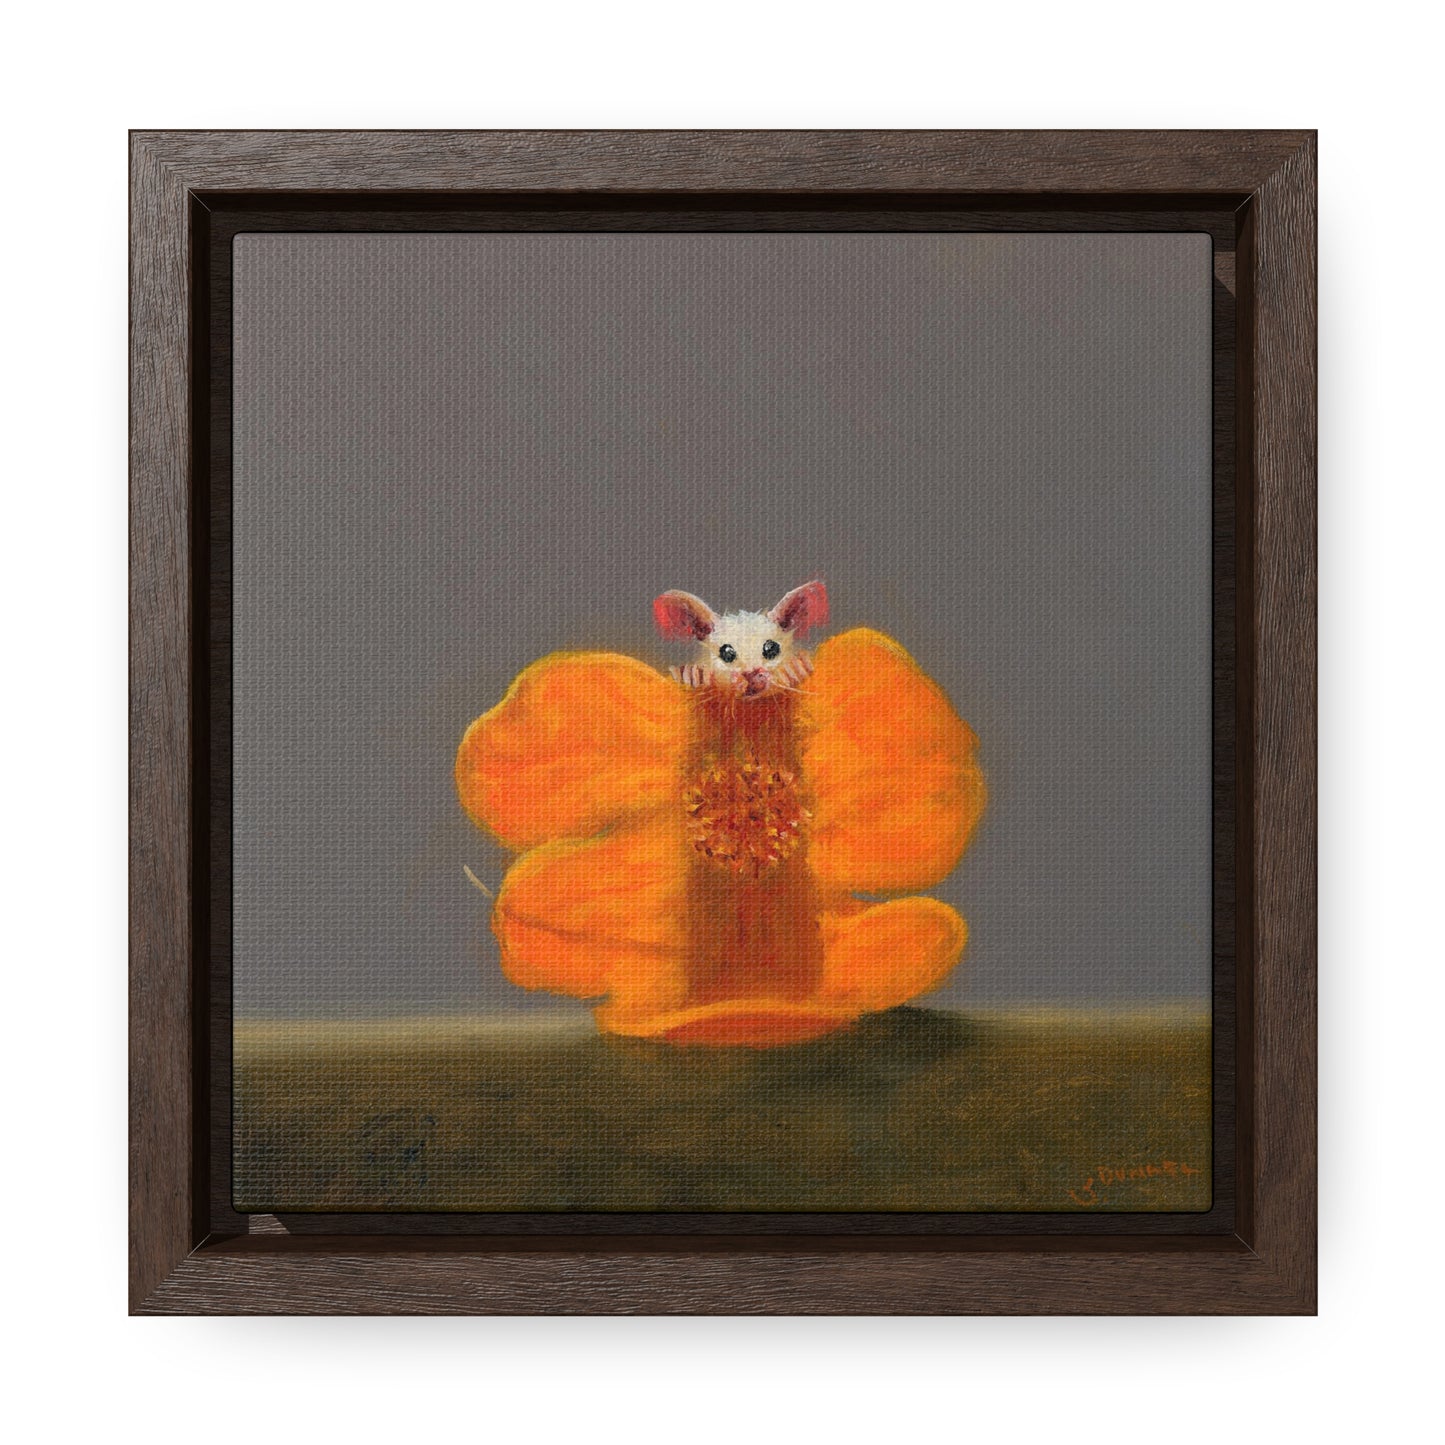 Stuart Dunkel: "Camouflage in Orange" - Framed Canvas